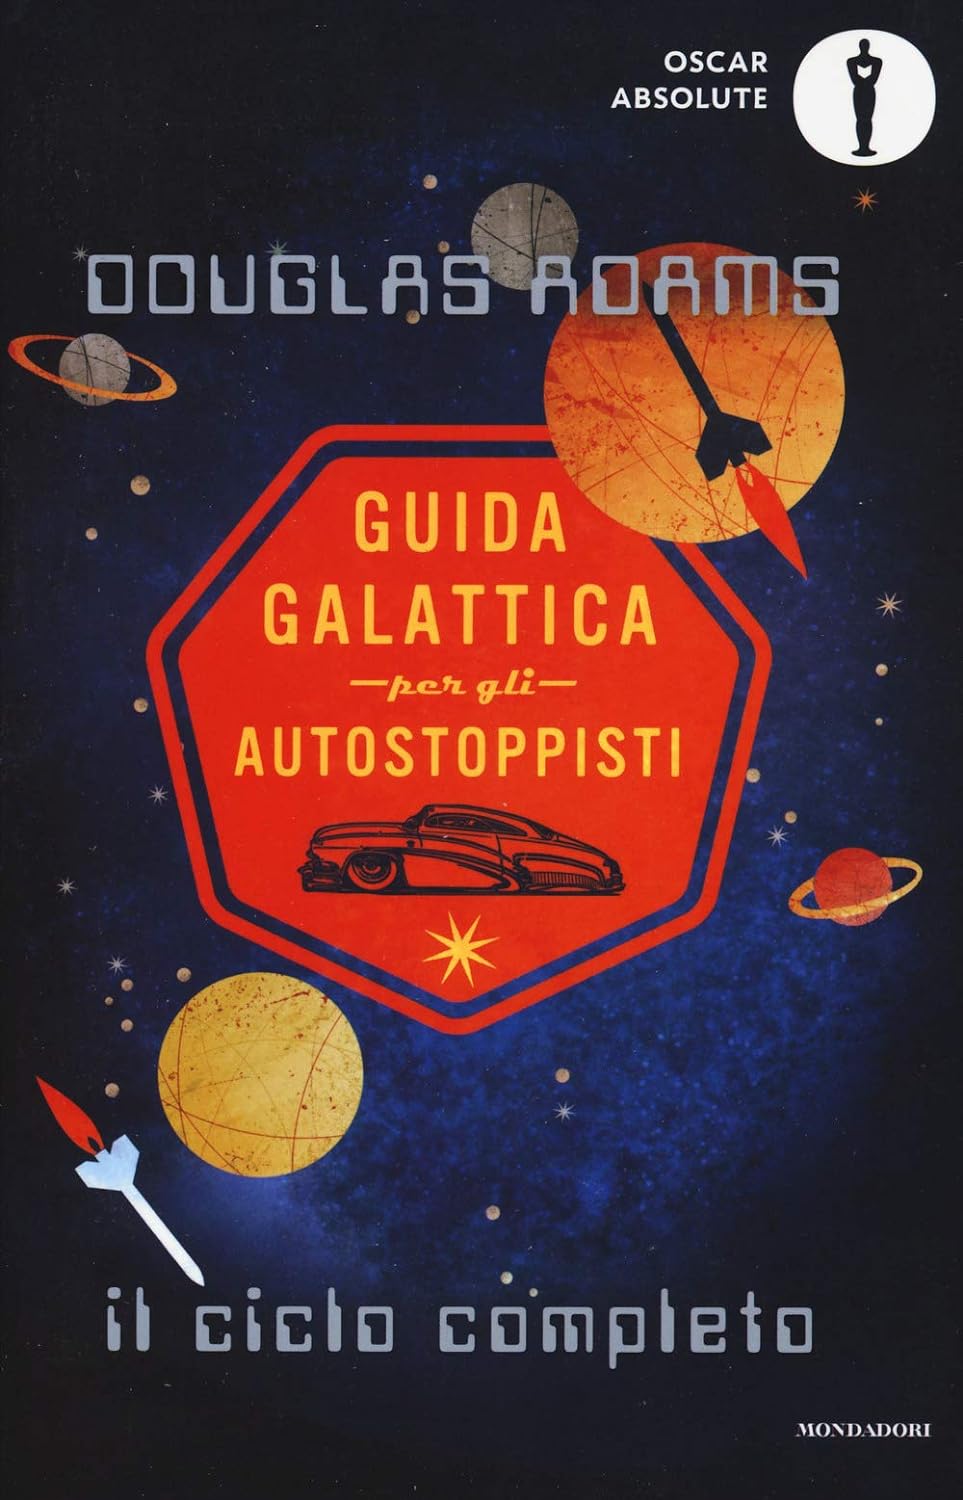 Guida galattica per gli autostoppisti – ciclo completo